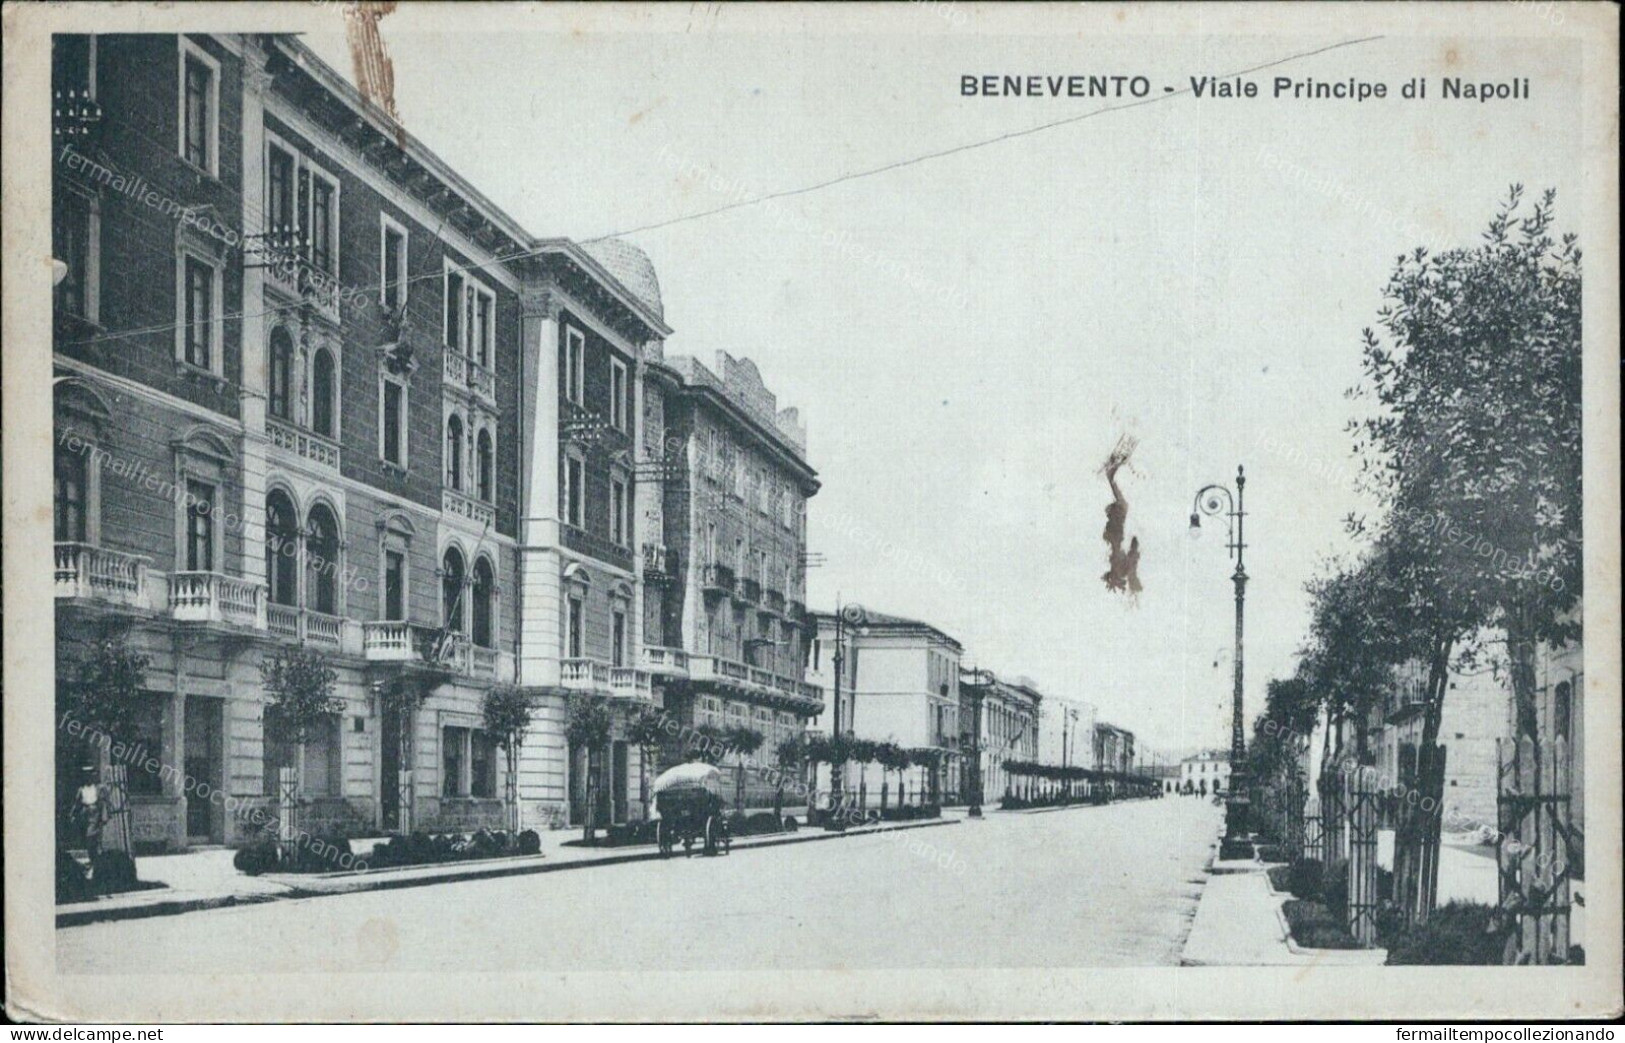 Cs382 Cartolina Benevento Citta' Viale Principe Di Napoli 1930 Campania - Benevento